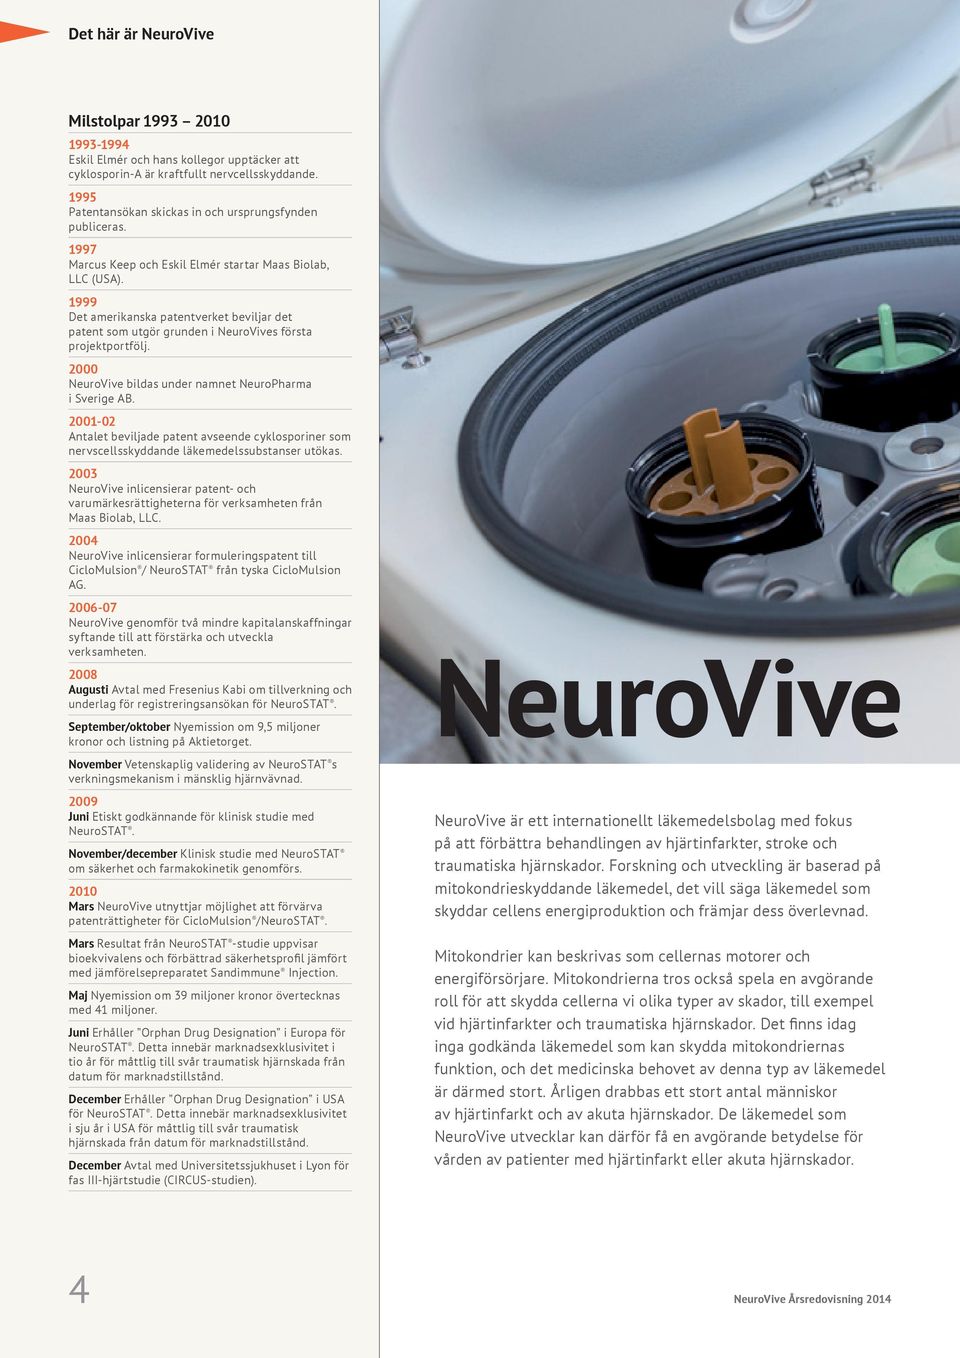 1999 Det amerikanska patentverket beviljar det patent som utgör grunden i NeuroVives första projektportfölj. 2000 NeuroVive bildas under namnet NeuroPharma i Sverige AB.